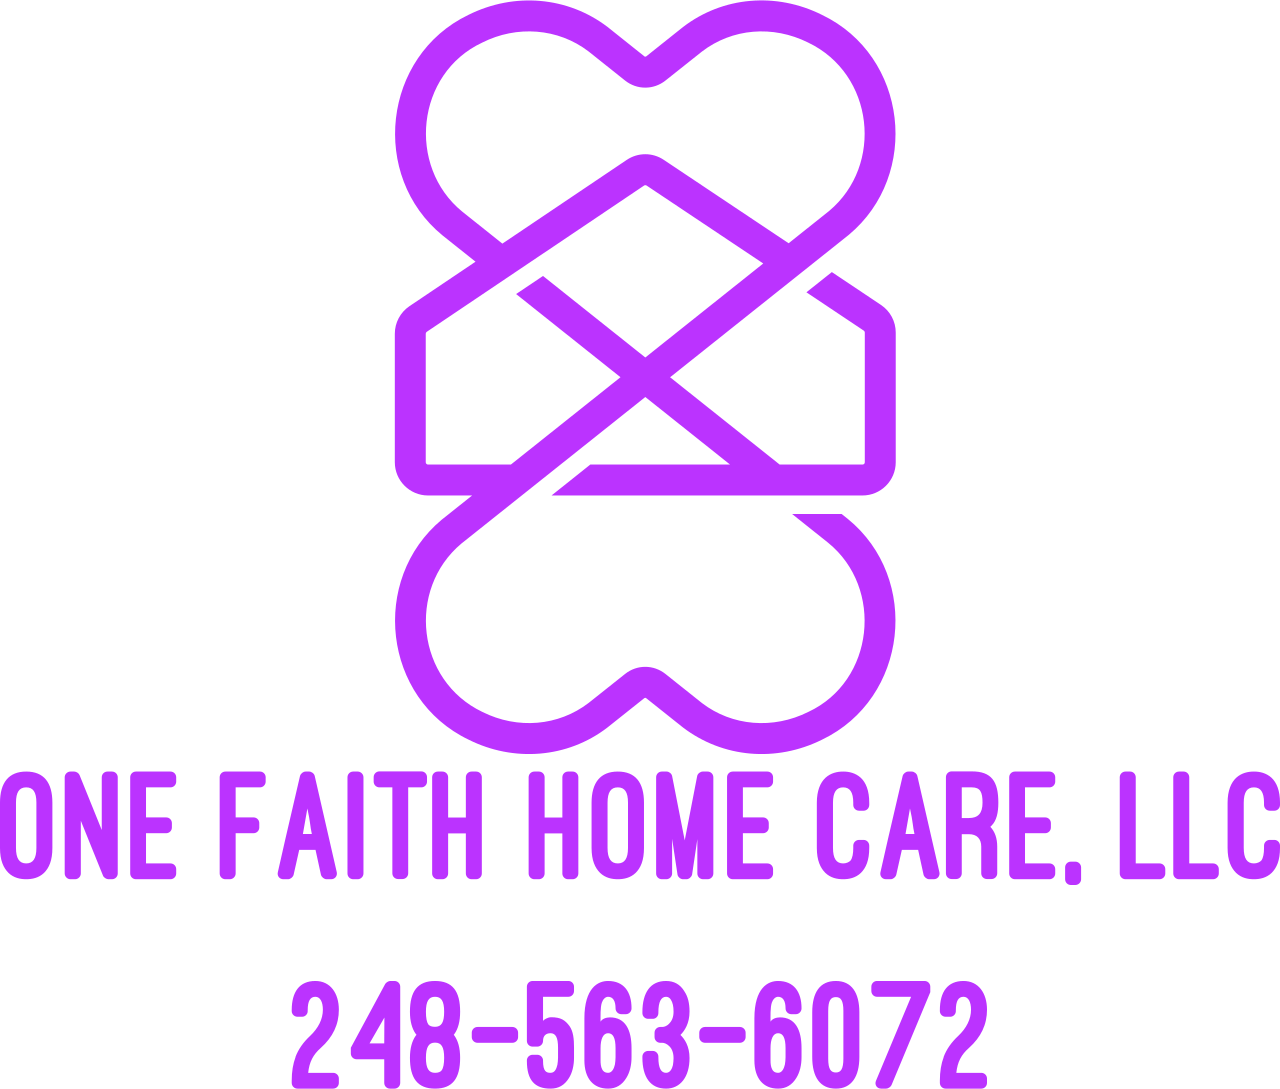 One Faith Home Care, LLC
248-563-6072's logo